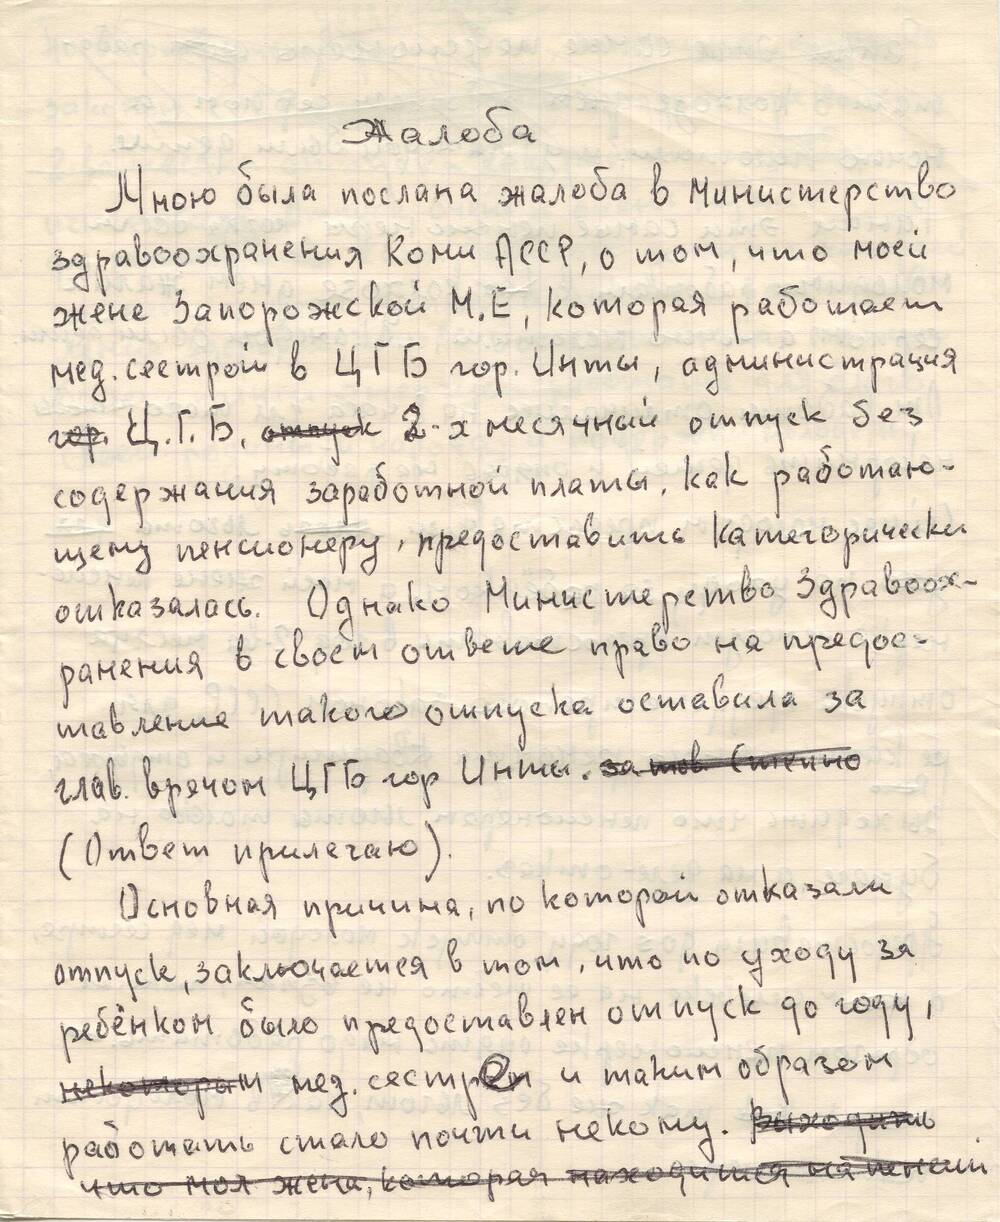 Документ Жалоба Пухова В.Н. в министерство здравоохранения Коми АССР